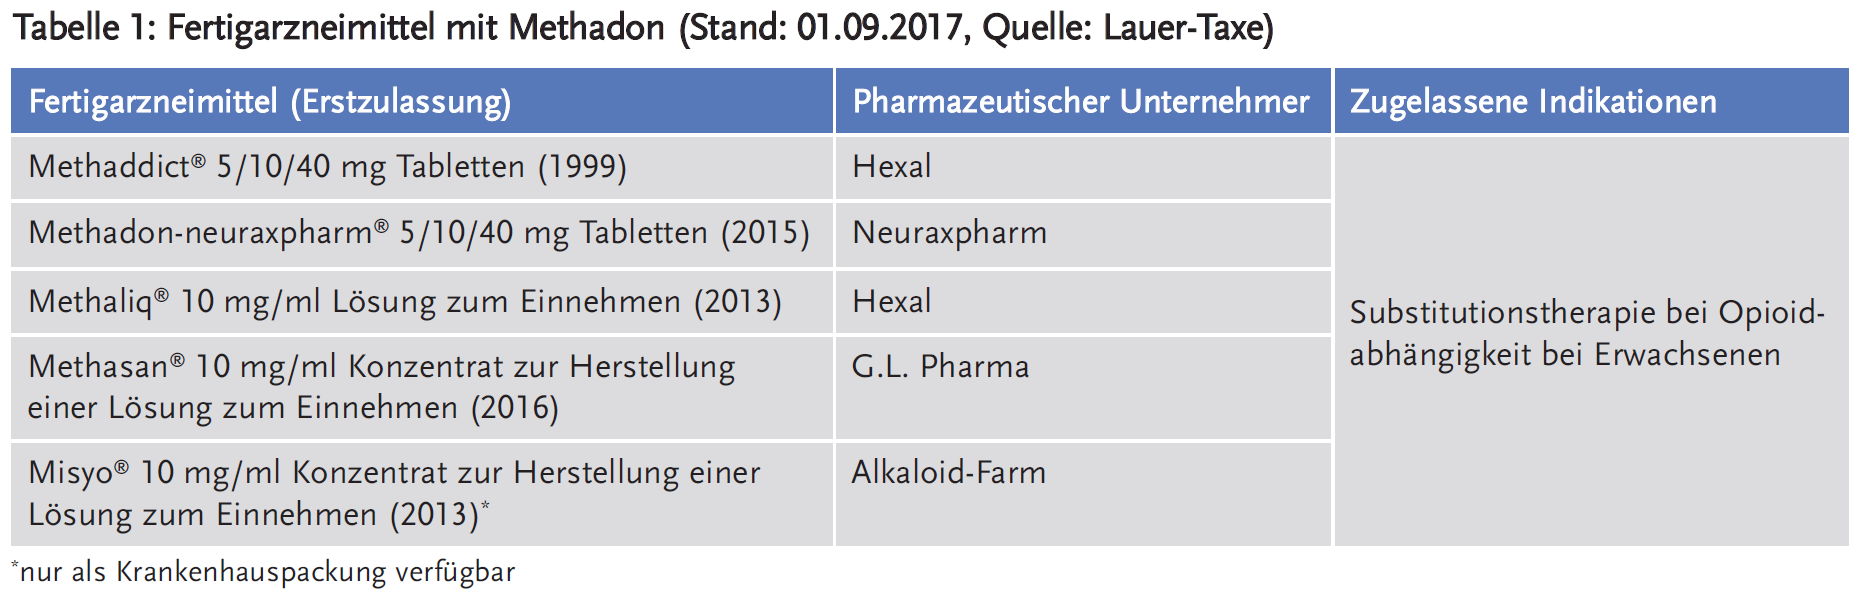 Tabelle 1: Fertigarzneimittel mit Methadon (Stand: 01.09.2017, Quelle: Lauer-Taxe)